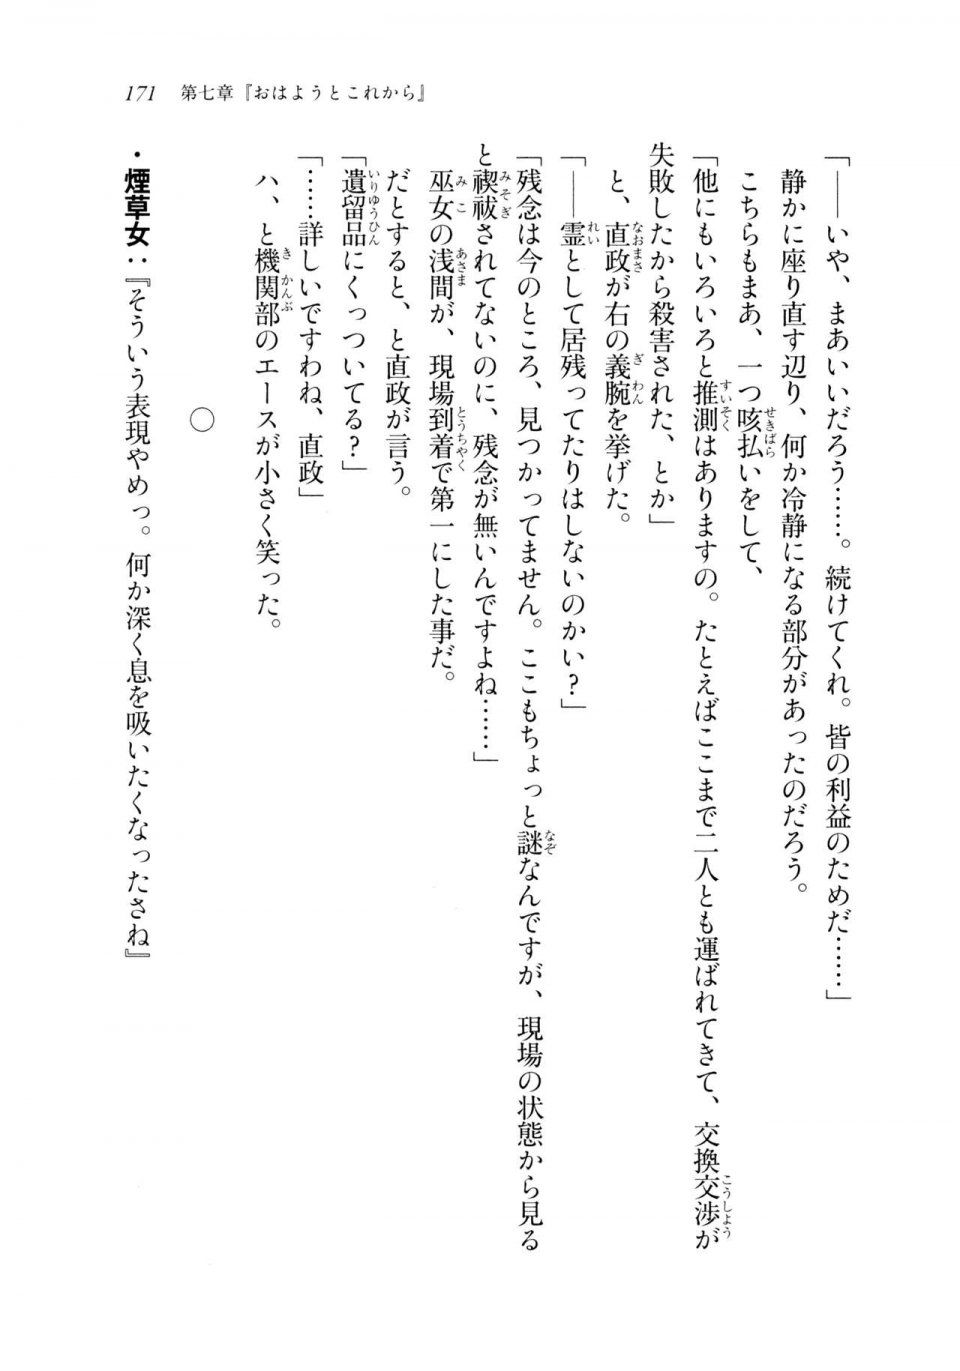 Kyoukai Senjou no Horizon LN Sidestory Vol 2 - Photo #169